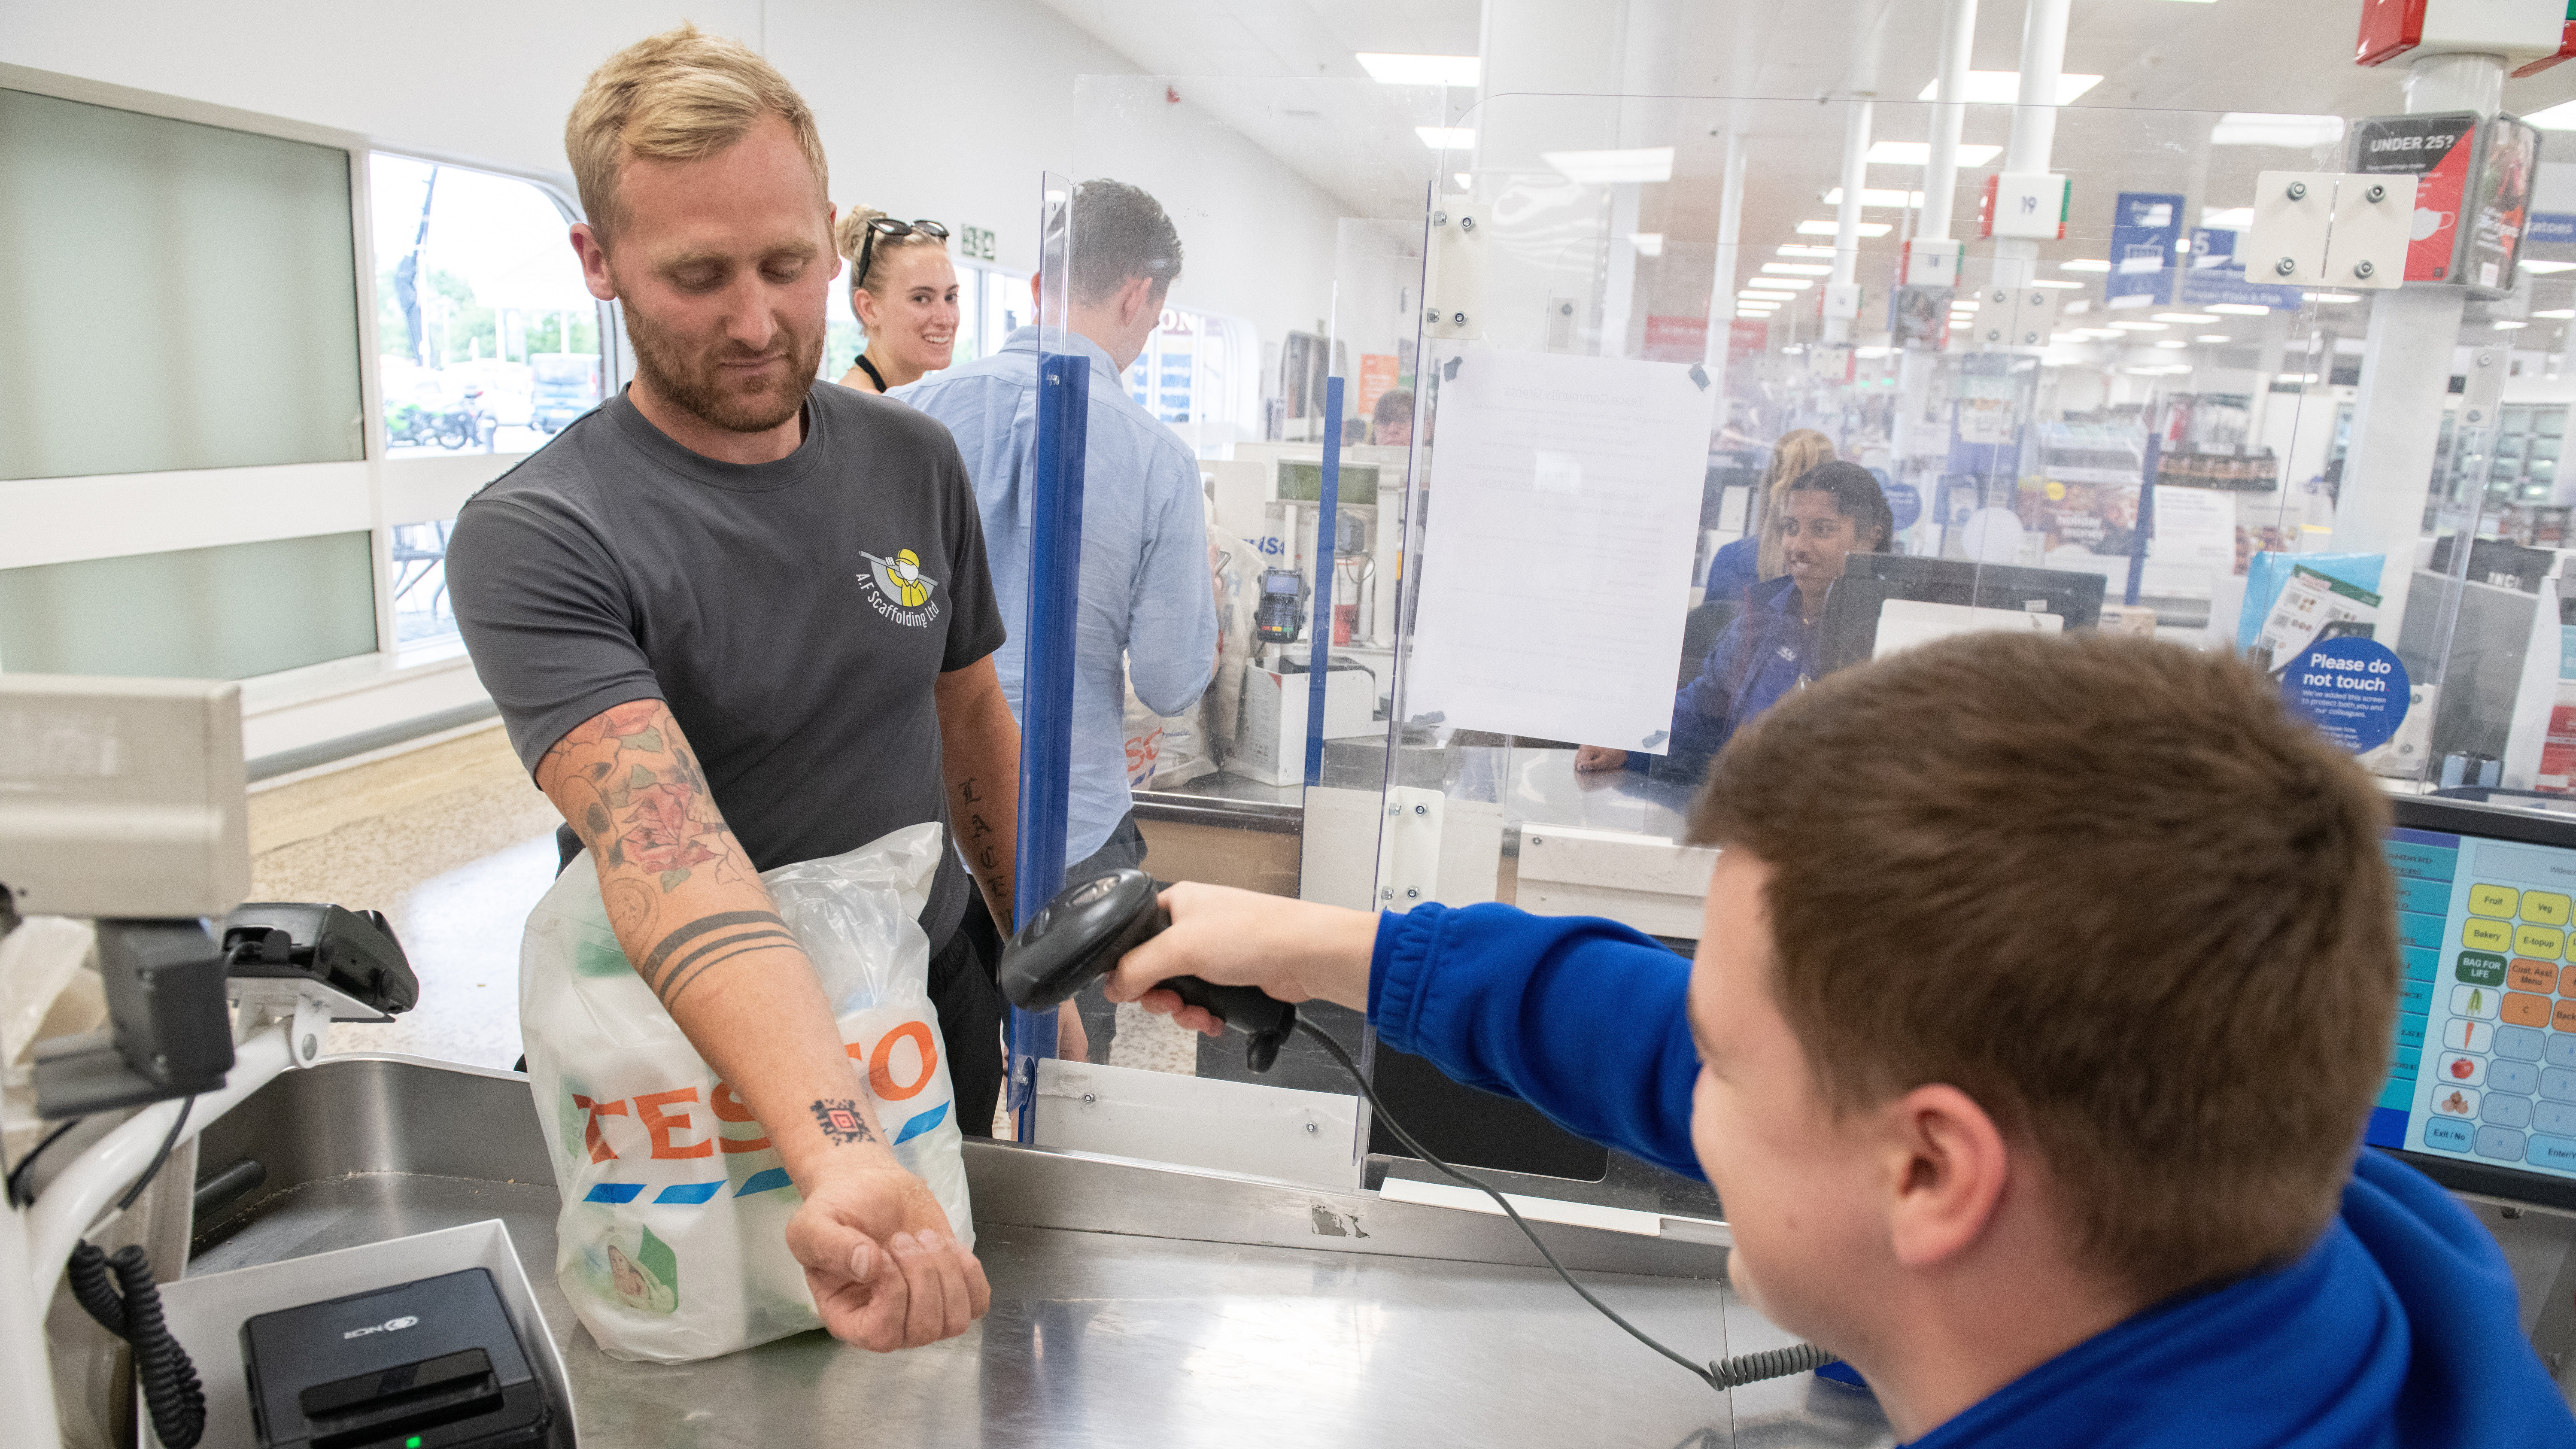 Tesco klubkártyát tetováltatott a karjára egy vásárló: ezzel indokolta